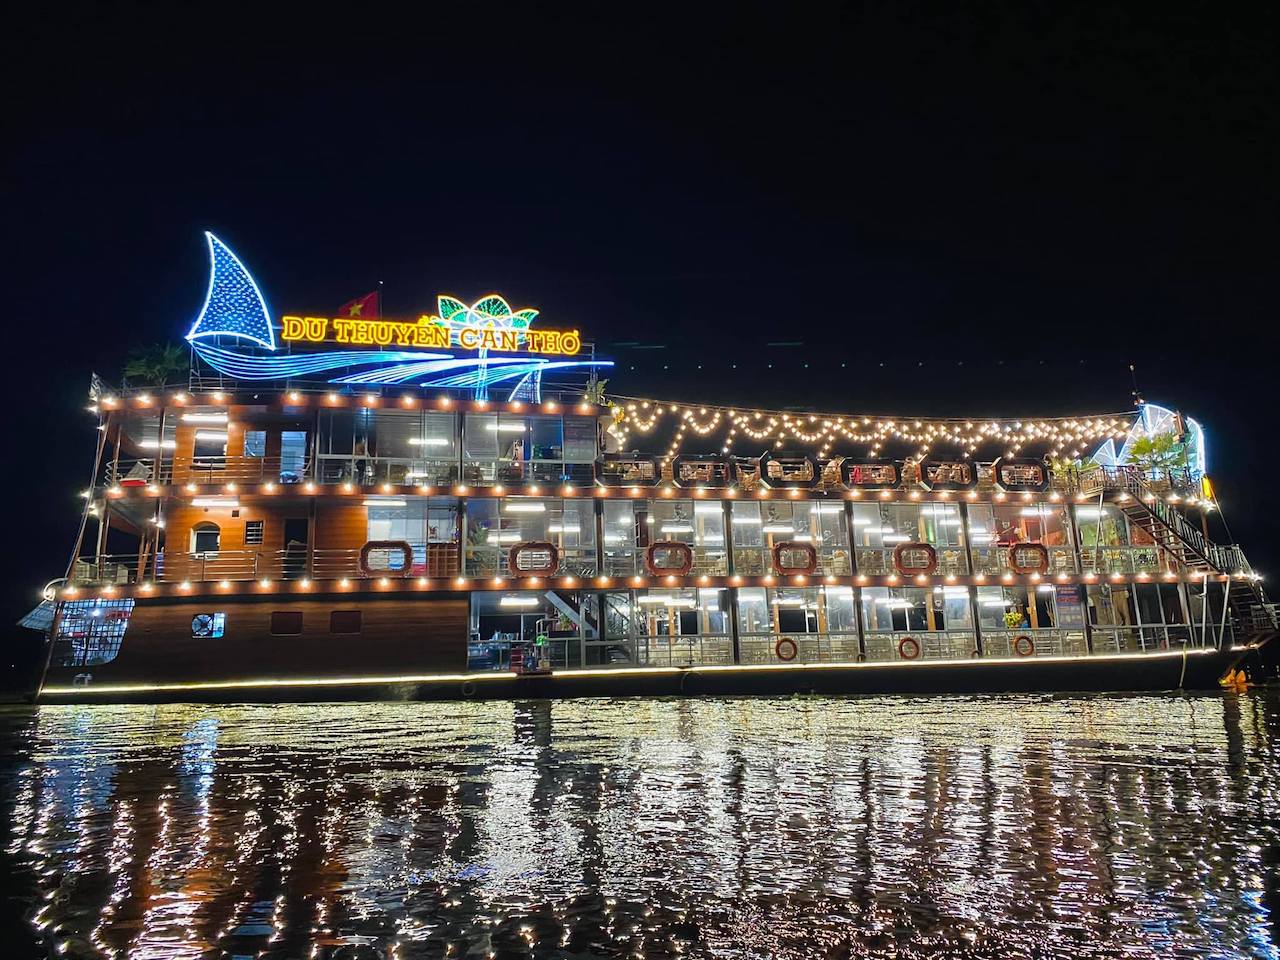 Du thuyền Cần Thơ - Ninh Kiều với những trải nghiệm đáng nhớ 4